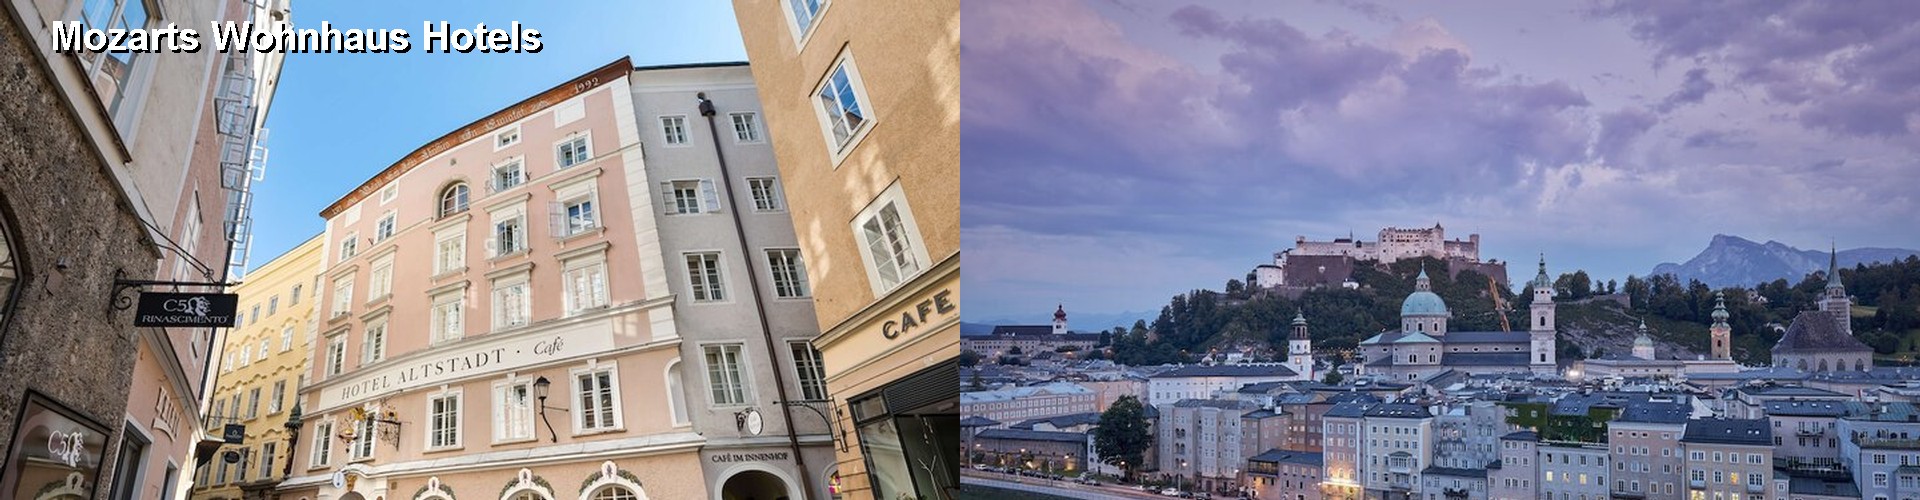 5 Best Hotels near Mozarts Wohnhaus